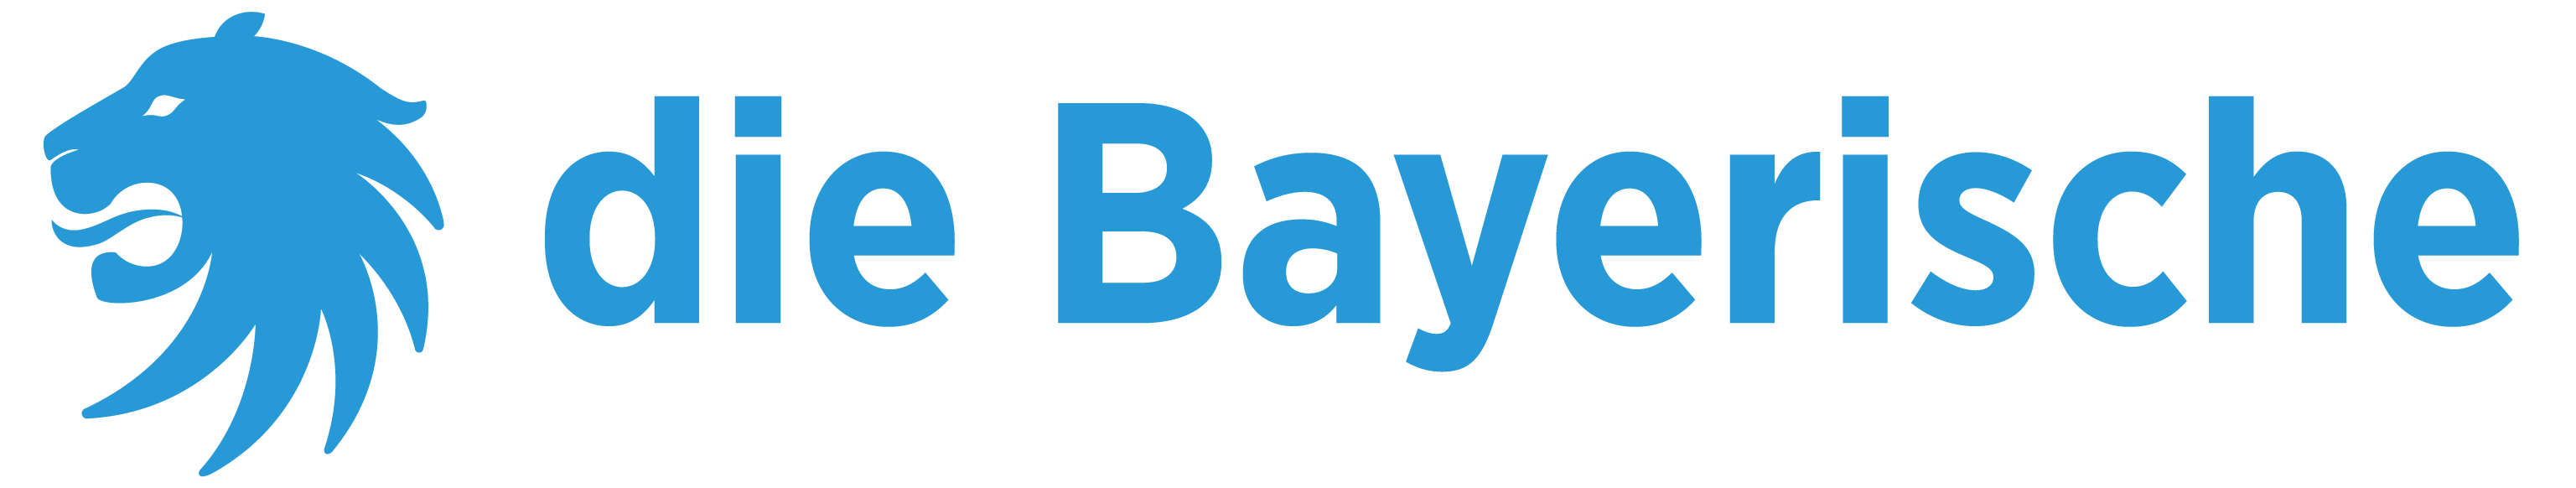 logo die bayrische